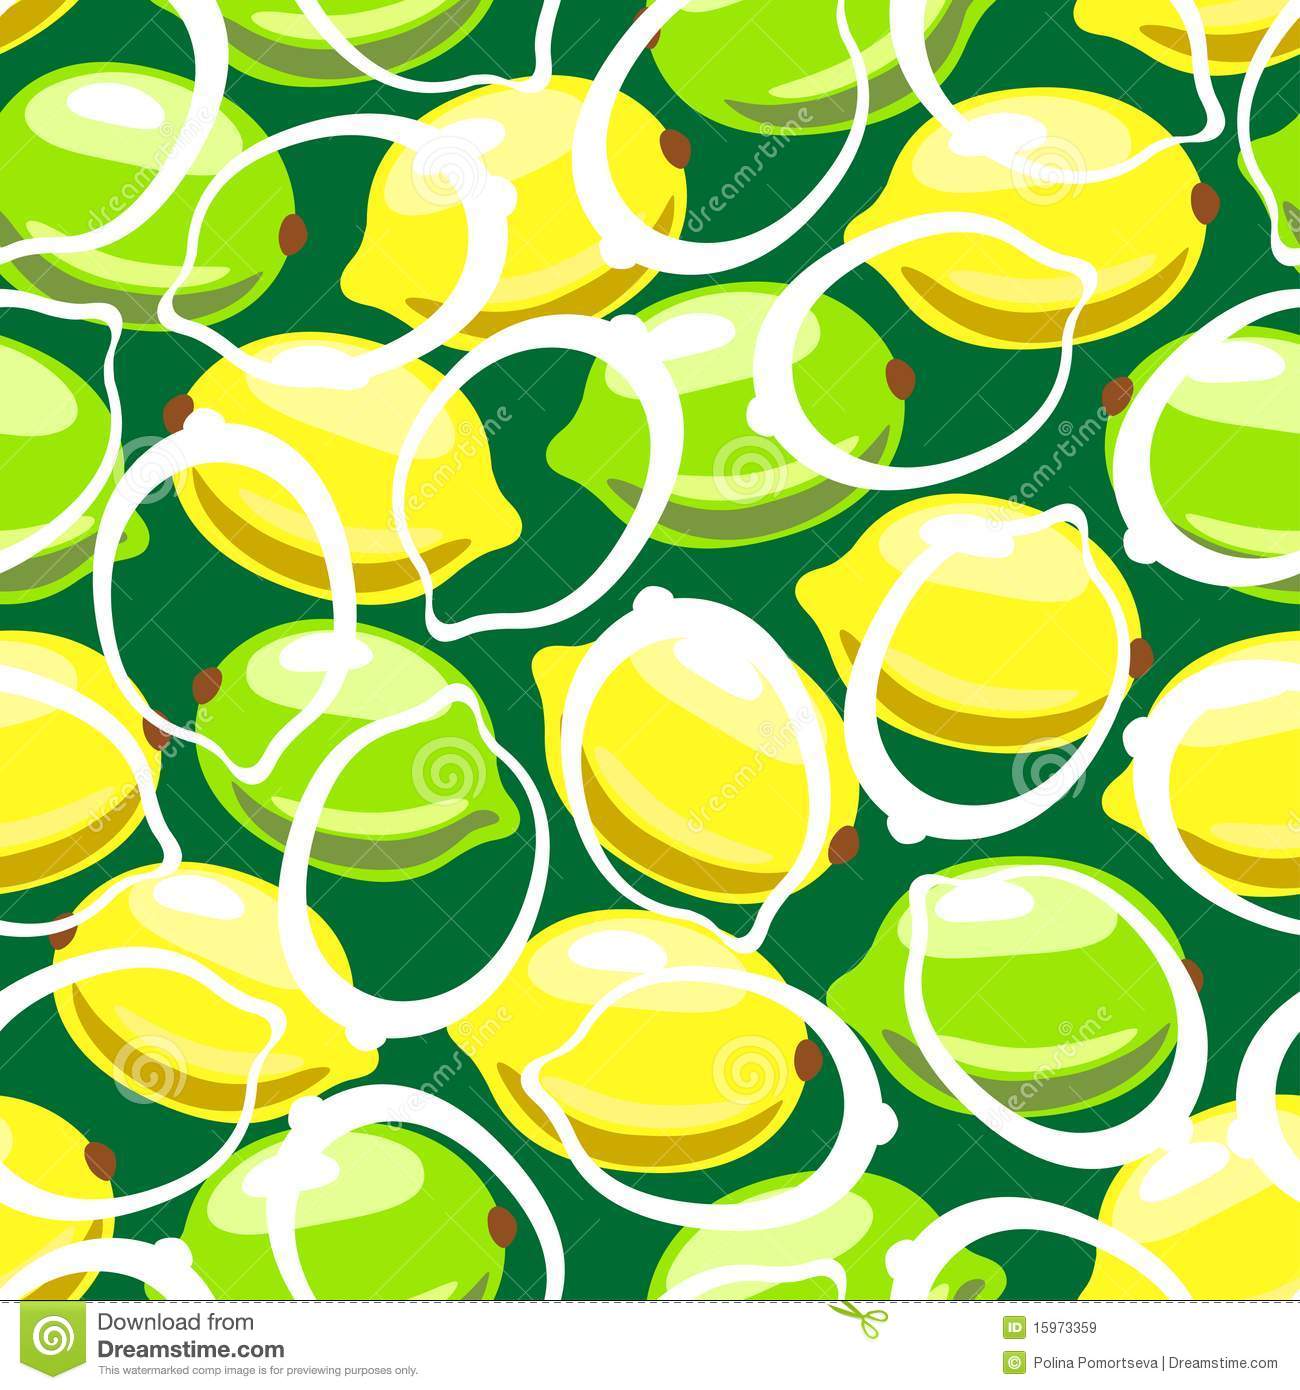 Lemon Pattern Wallpaper Seamless X3cb X3elemon X3c B X3e